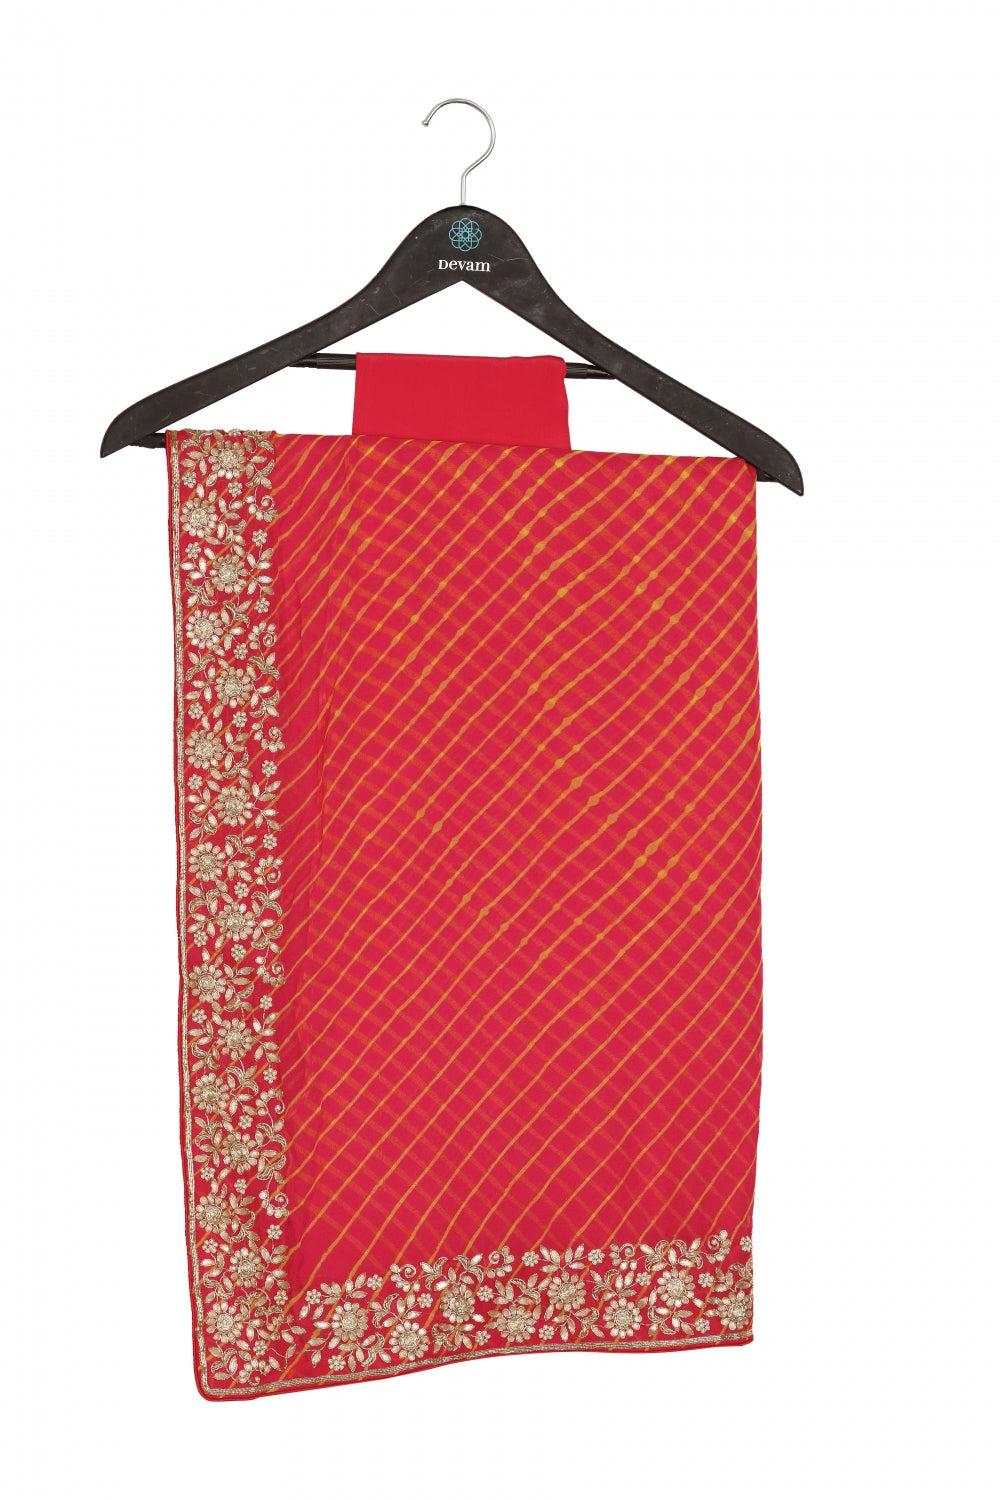 Red Georgette Leheriyan Hand Embroidered Saree Devam